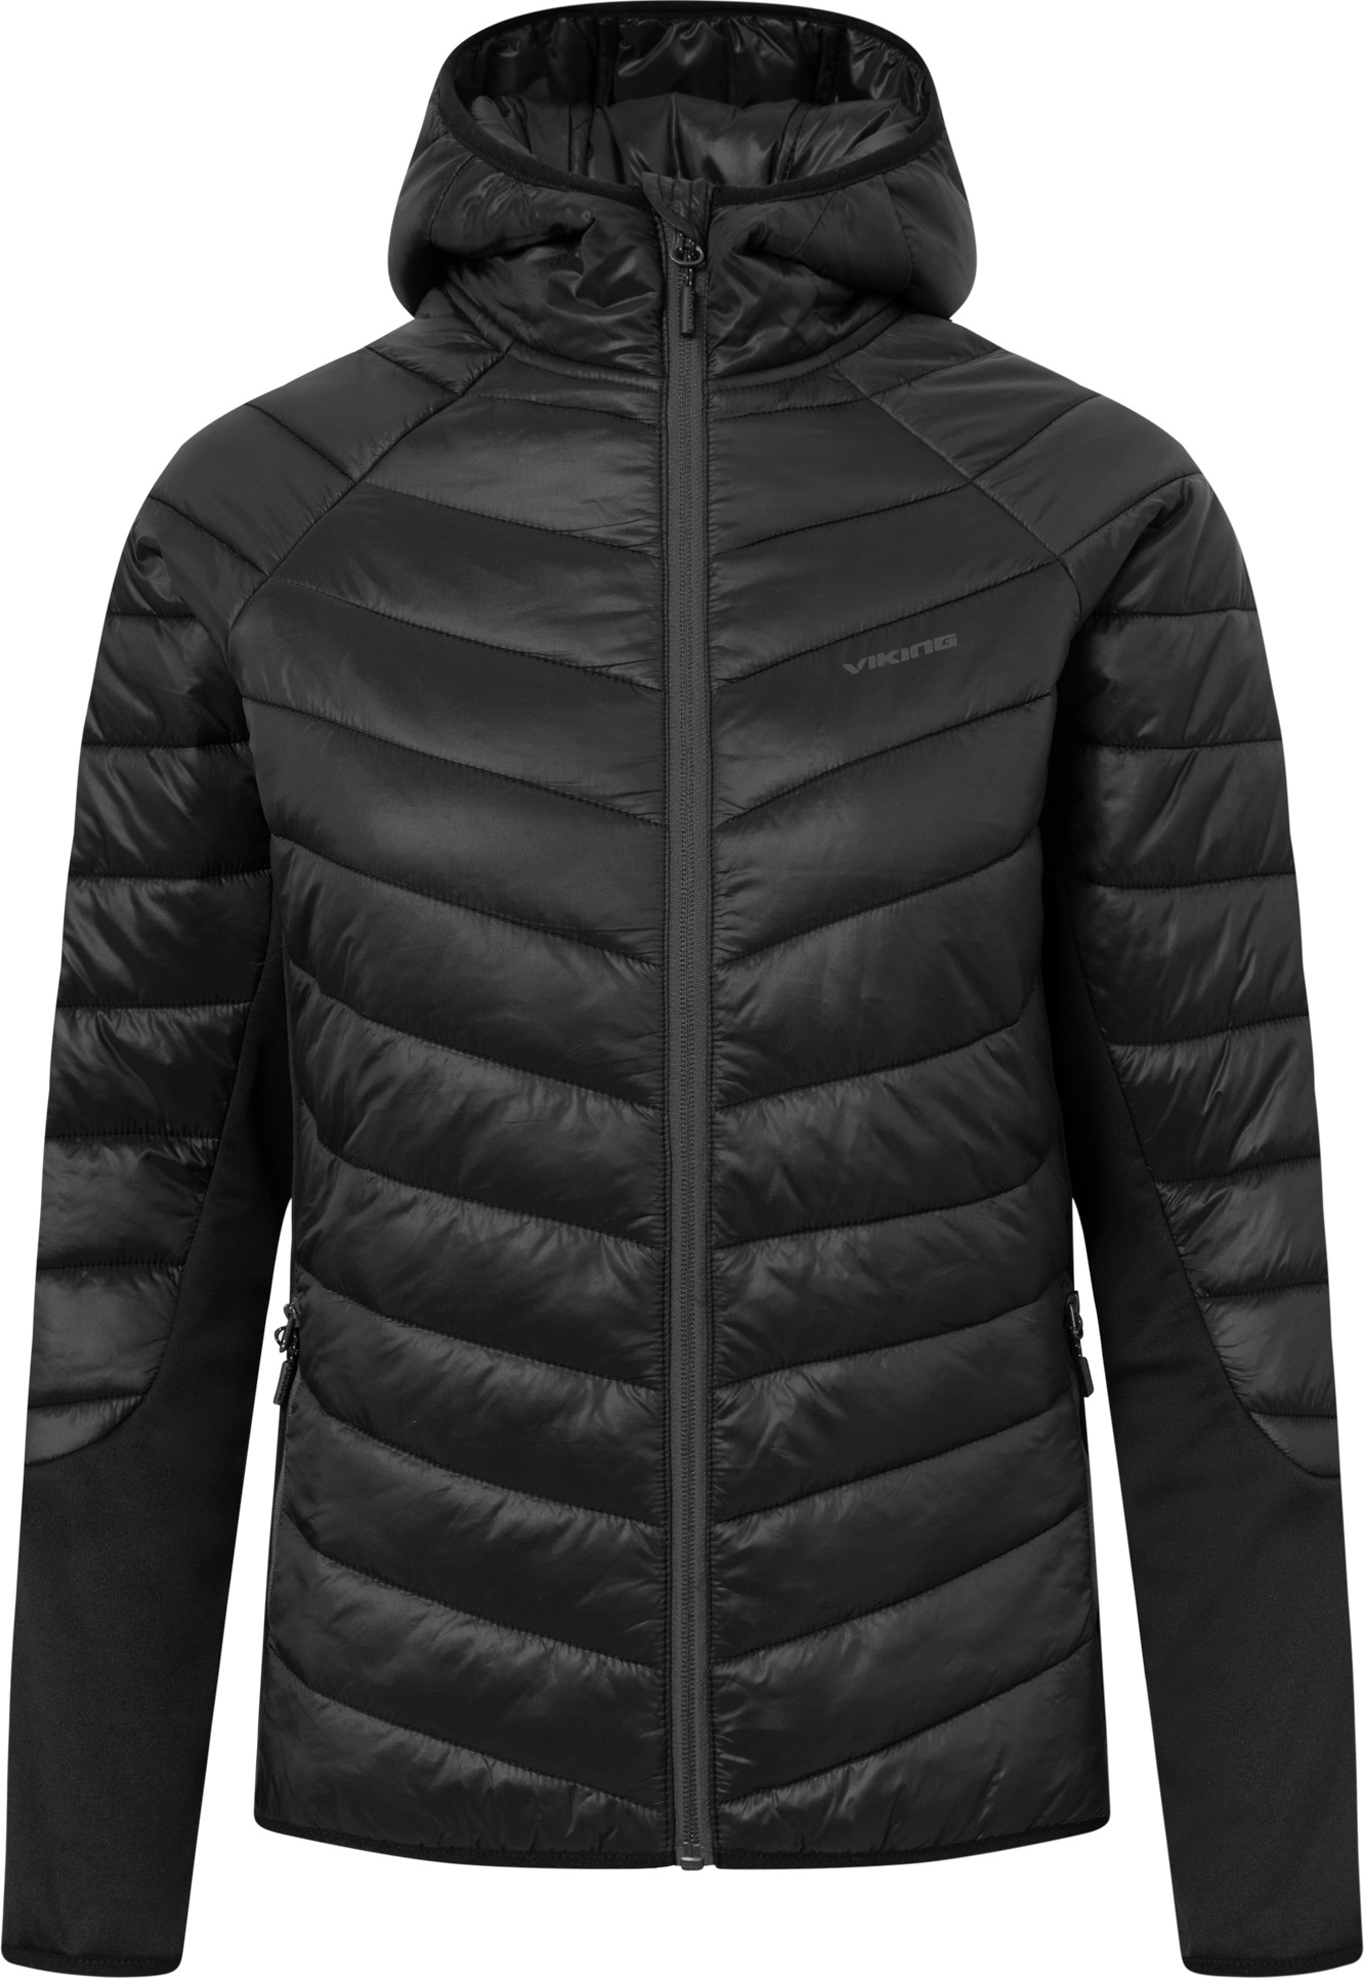 Dámská outdoorová bunda VIKING Becky Warm Pro černá Velikost: L